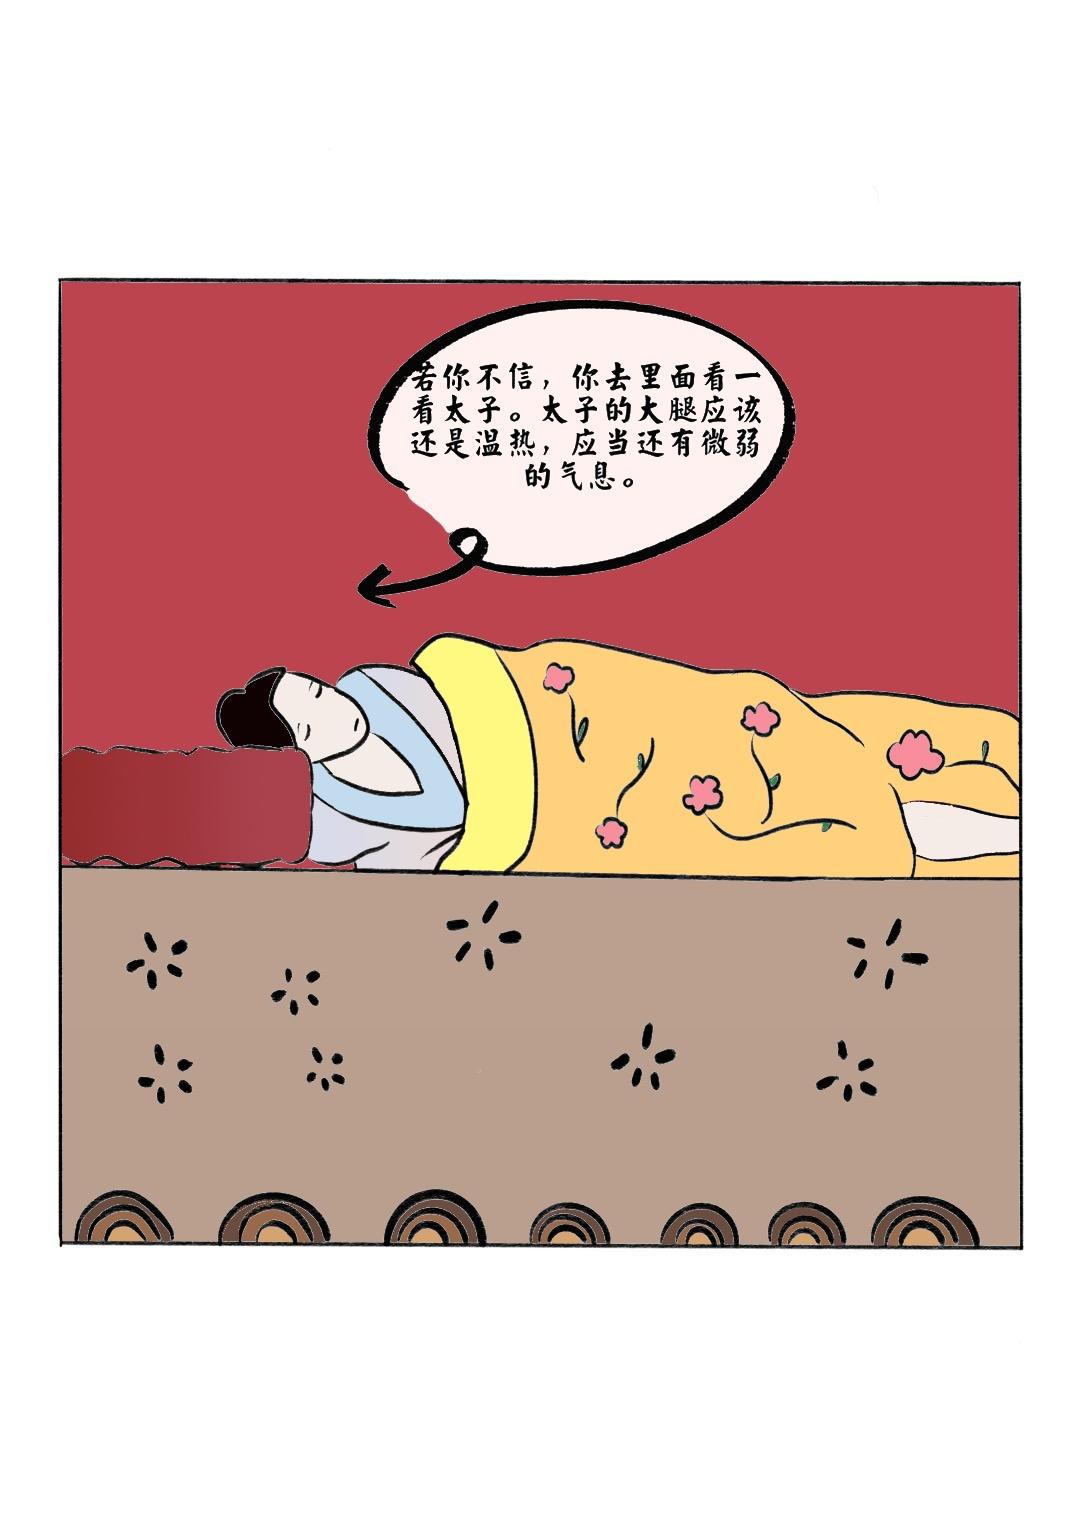 中醫入門之鍼灸趣味科普漫畫 - 扁鵲妙手起死回生 - 8